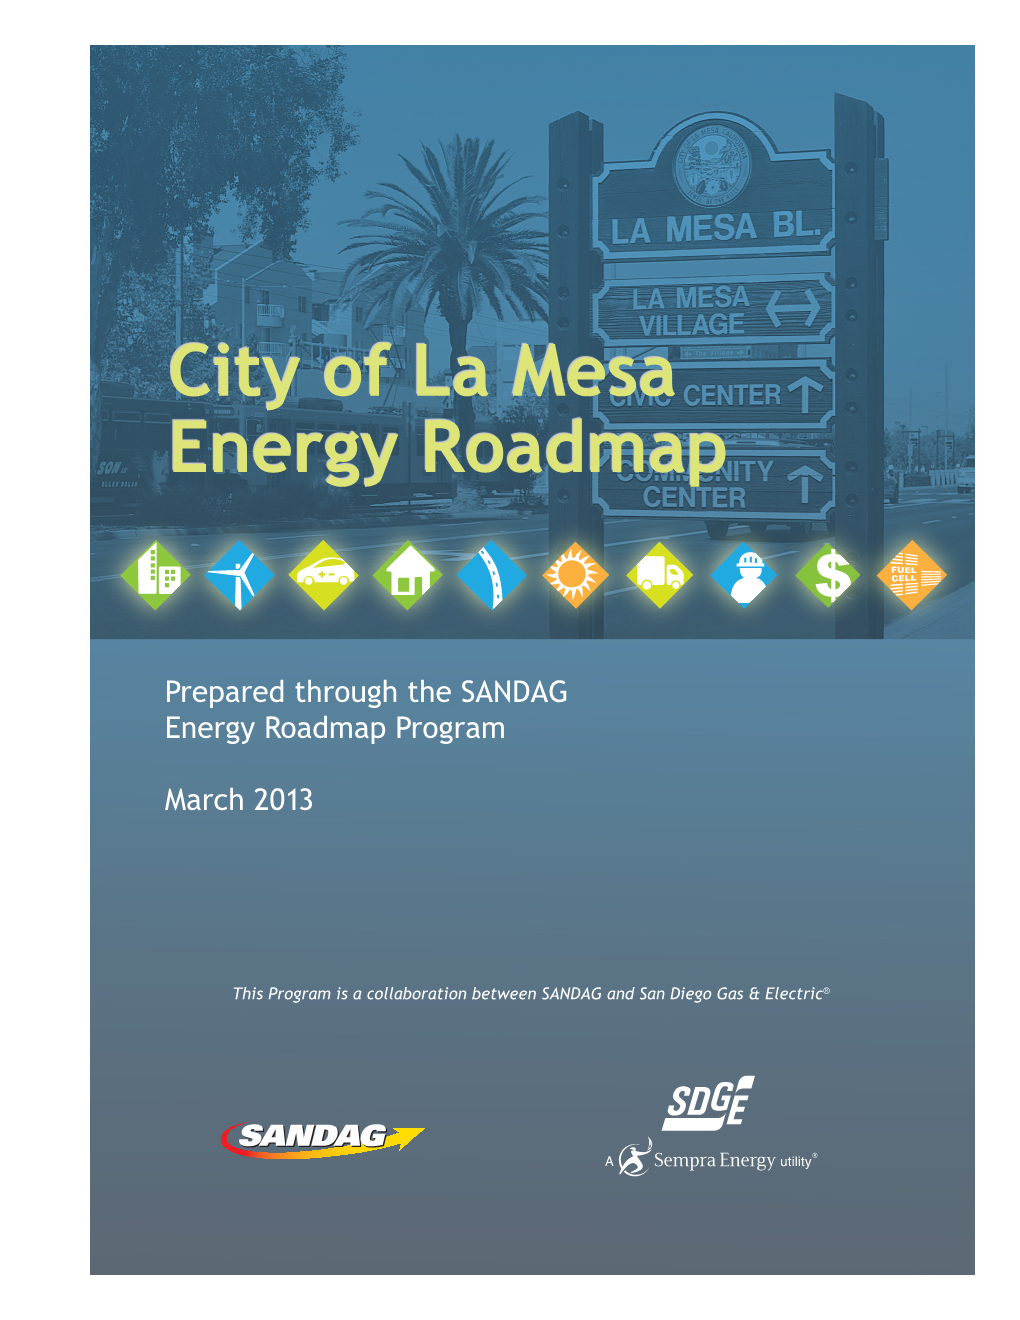 City of La Mesa Energy Roadmap